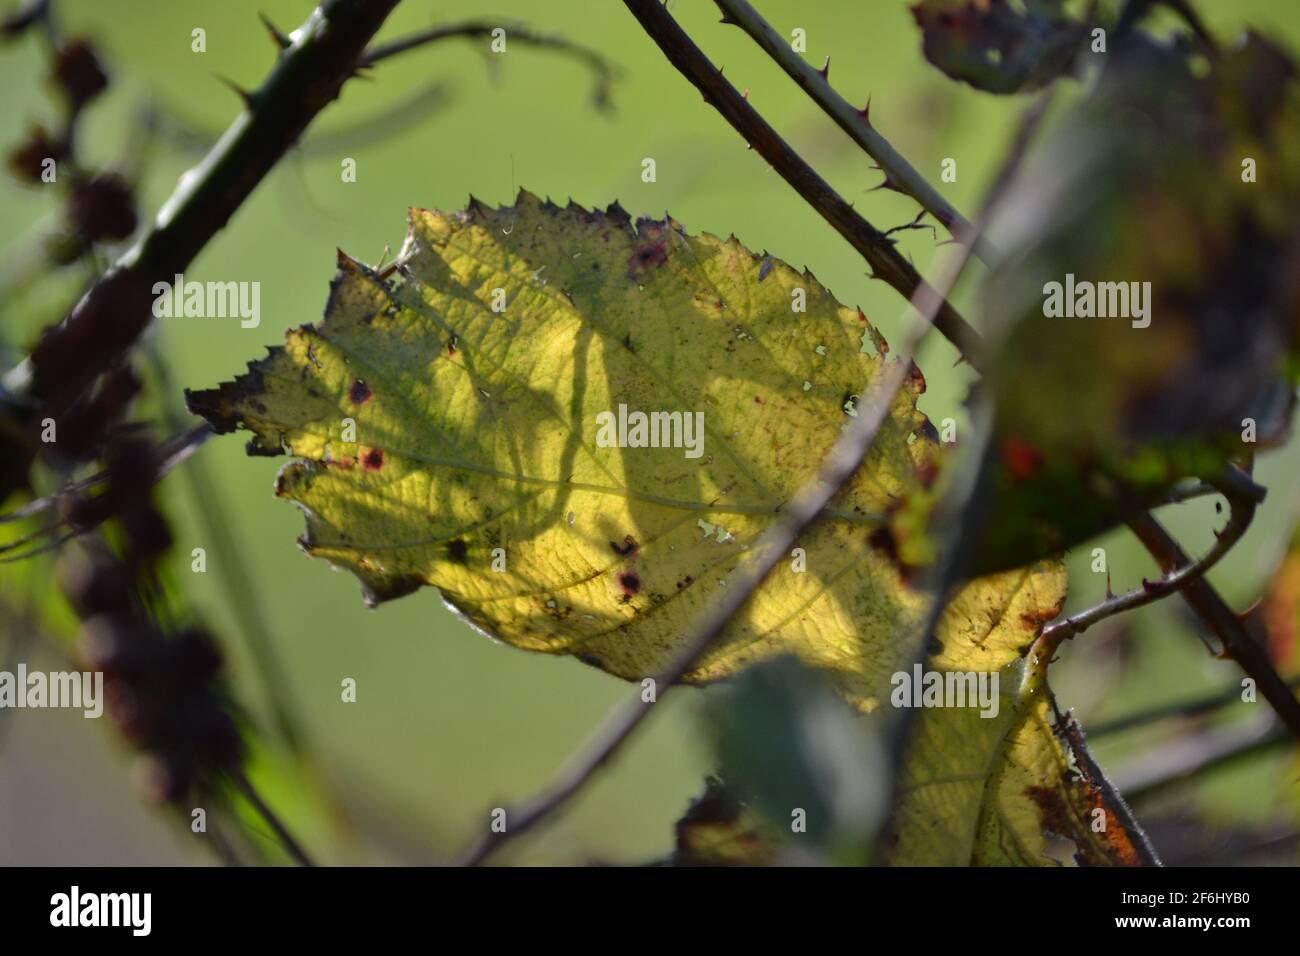 Feuille d'automne dans le jardin arrière - entre les branches - Sunny Day - allotement - nature - changements de saison - North Yorkshire - UK Banque D'Images